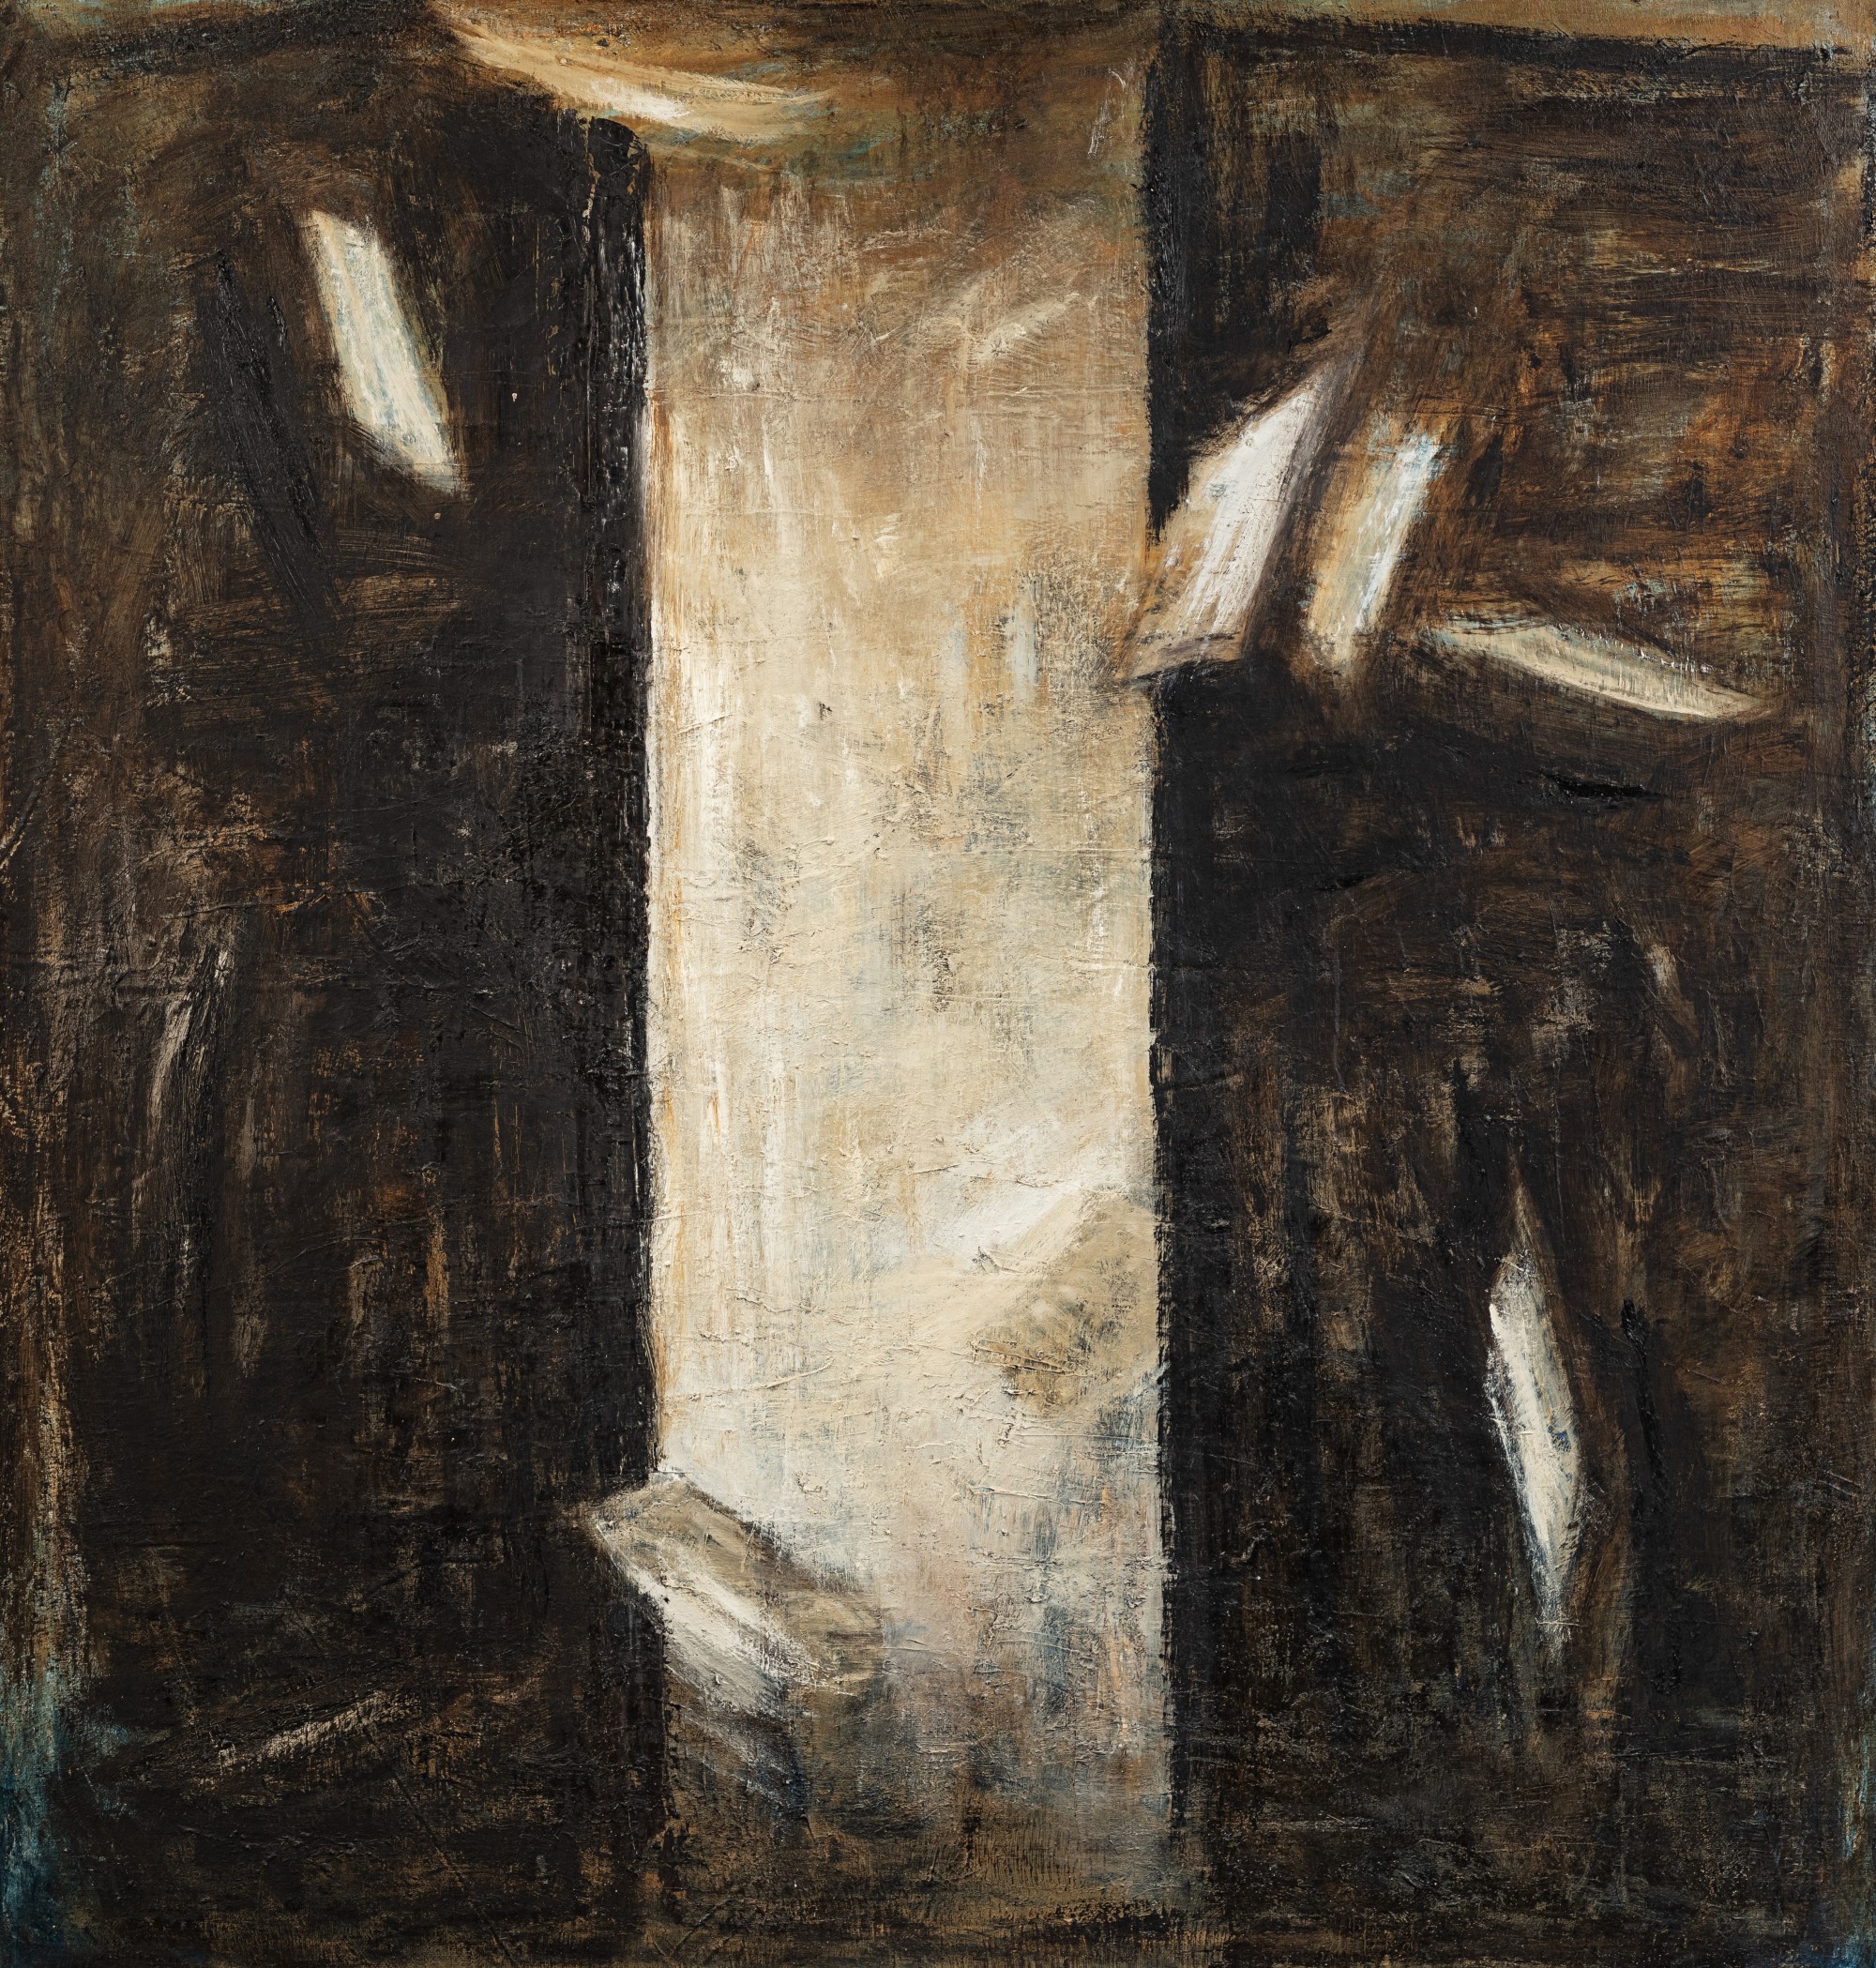 Piero Pizzi Cannella, 
Fogli che volano, Huile sur toile, 1986, 
180 x 180 cm
